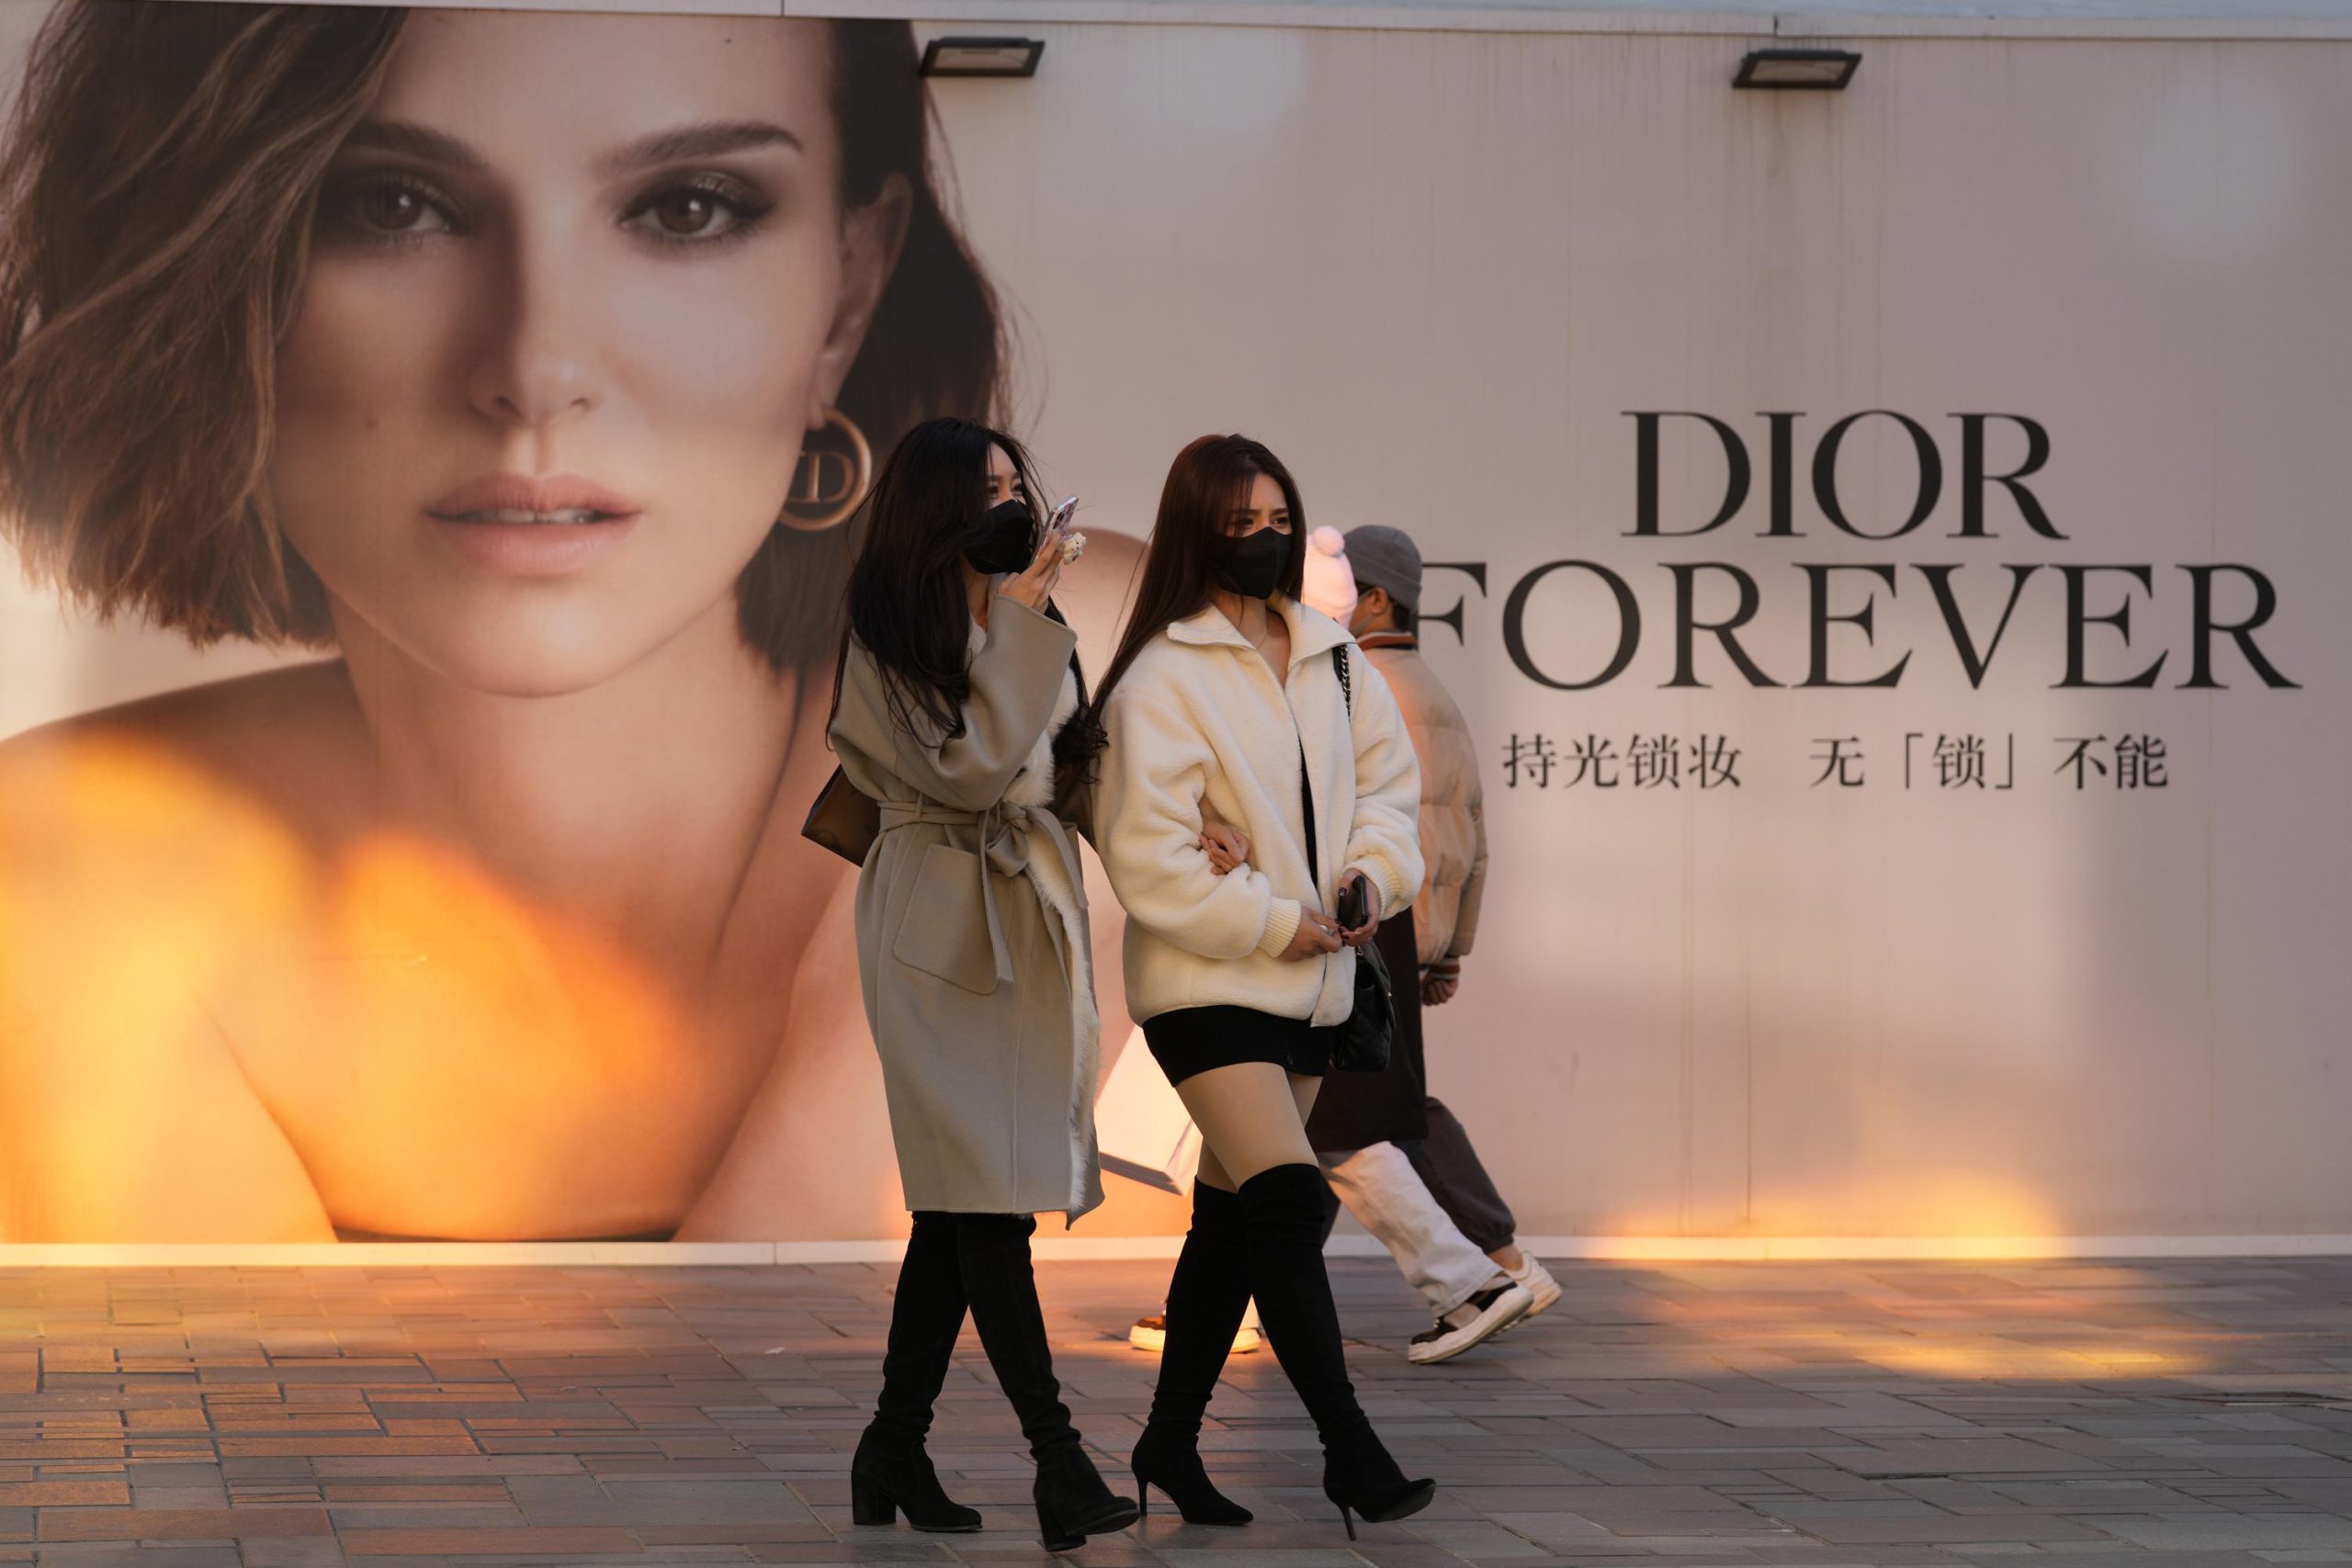 디올 논란에 휩싸인 중국 패션 포토그래퍼, 사과